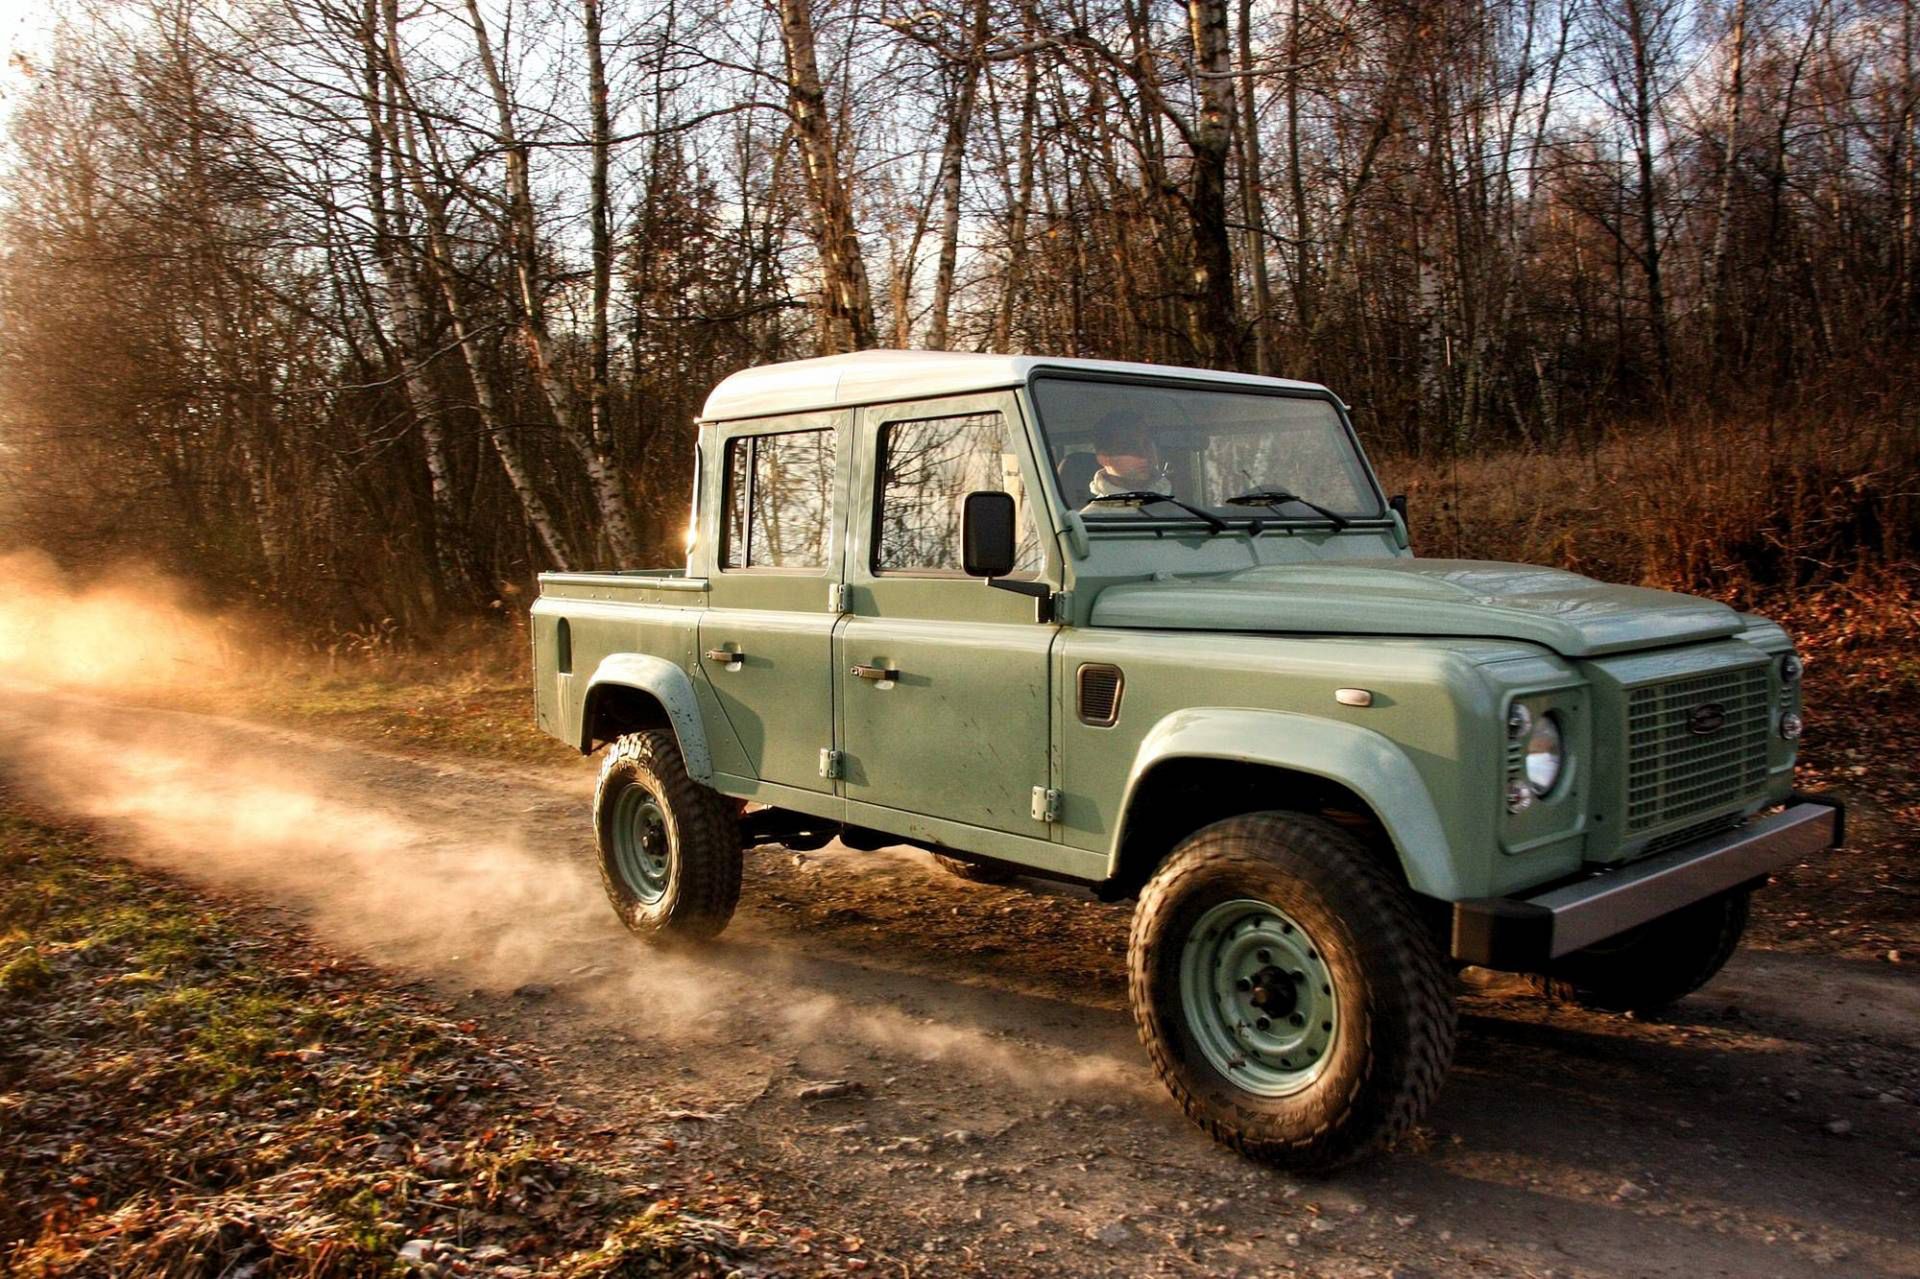 Land Rover Defender Land Serwis - Fabrycznie Nowy Defender Z Polski, Produkcja Defendera Kontynuowana | Autokult.pl